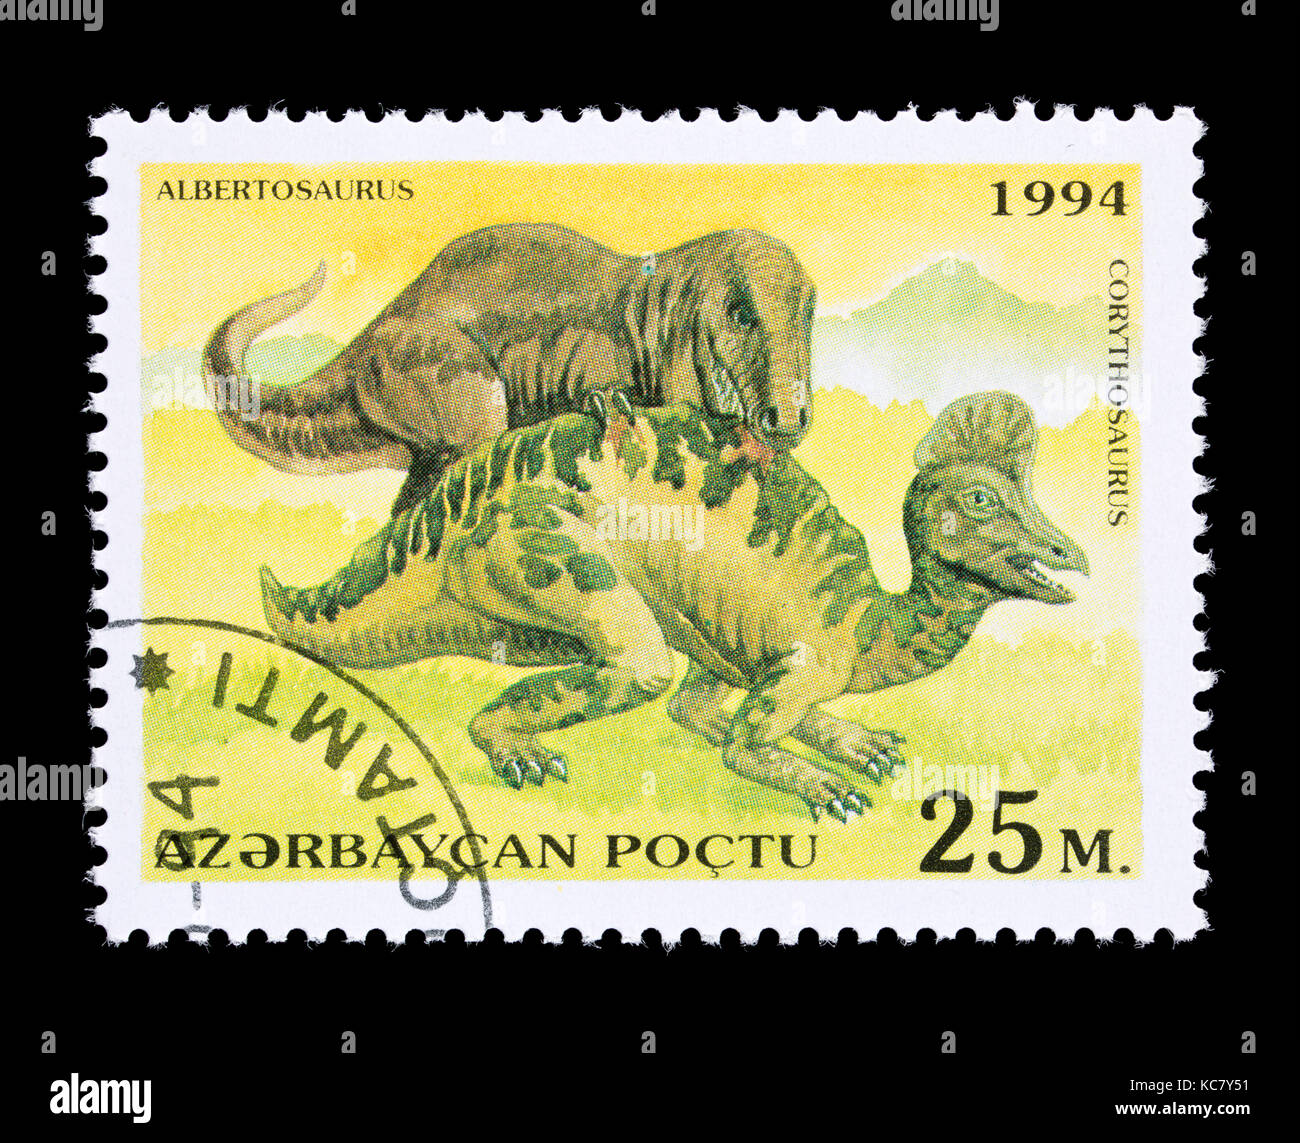 Timbre-poste de l'Azerbaïdjan représentant un Albertosaurus attaquer un corythosaurus Banque D'Images